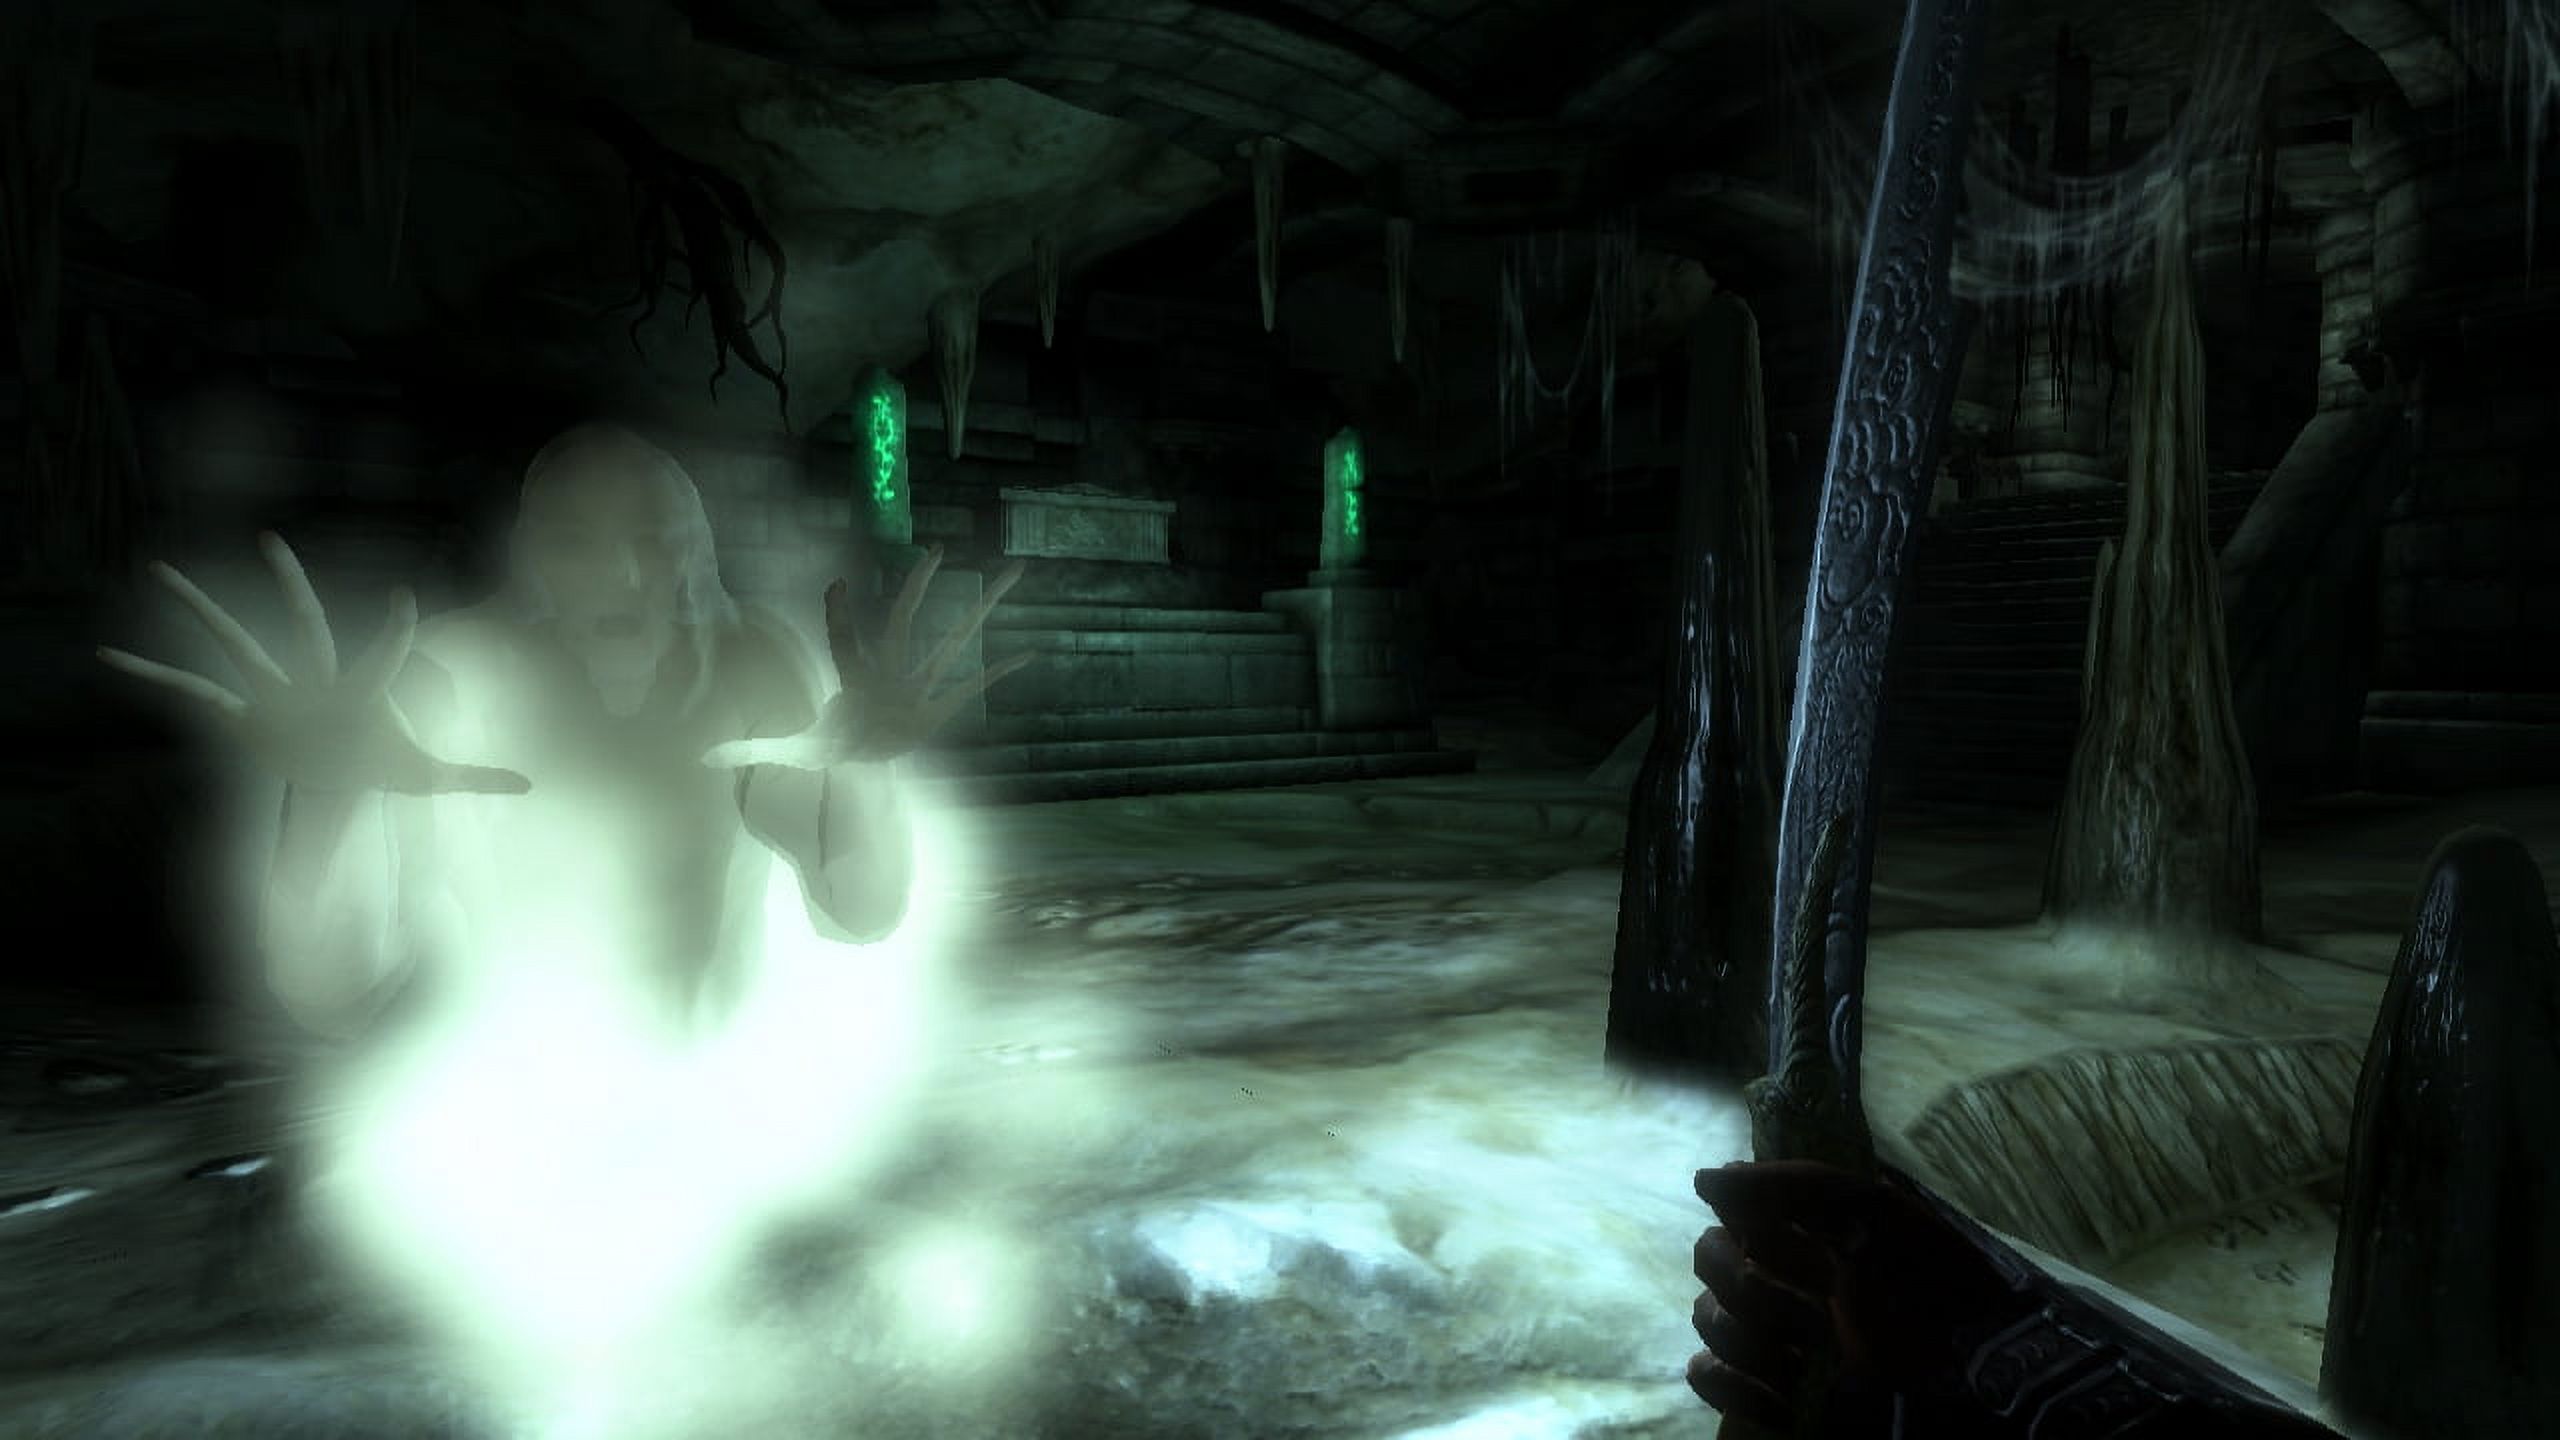 Take-Two The Elder Scrolls IV: Oblivion - image 5 of 10